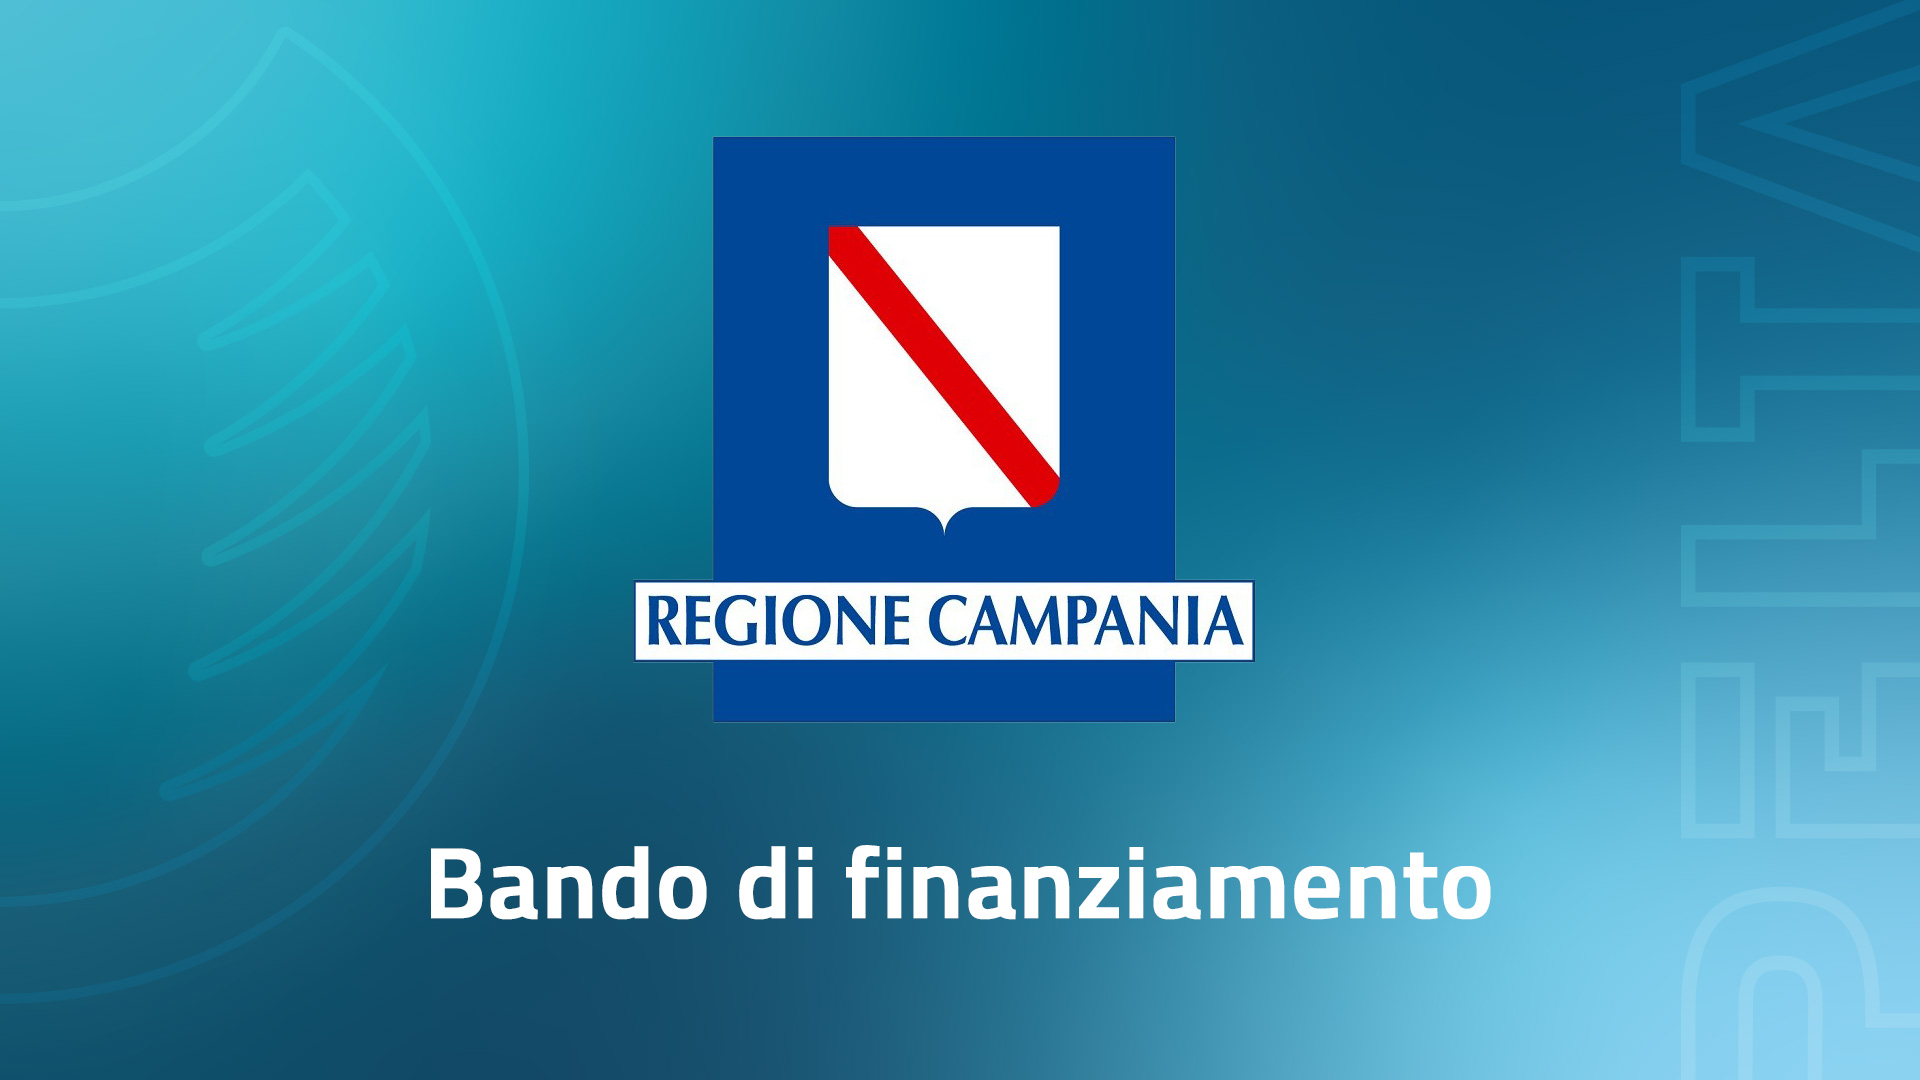 PELTA Sicurezza Urbana - Bando di finanziamento promosso dalla Regione Campania